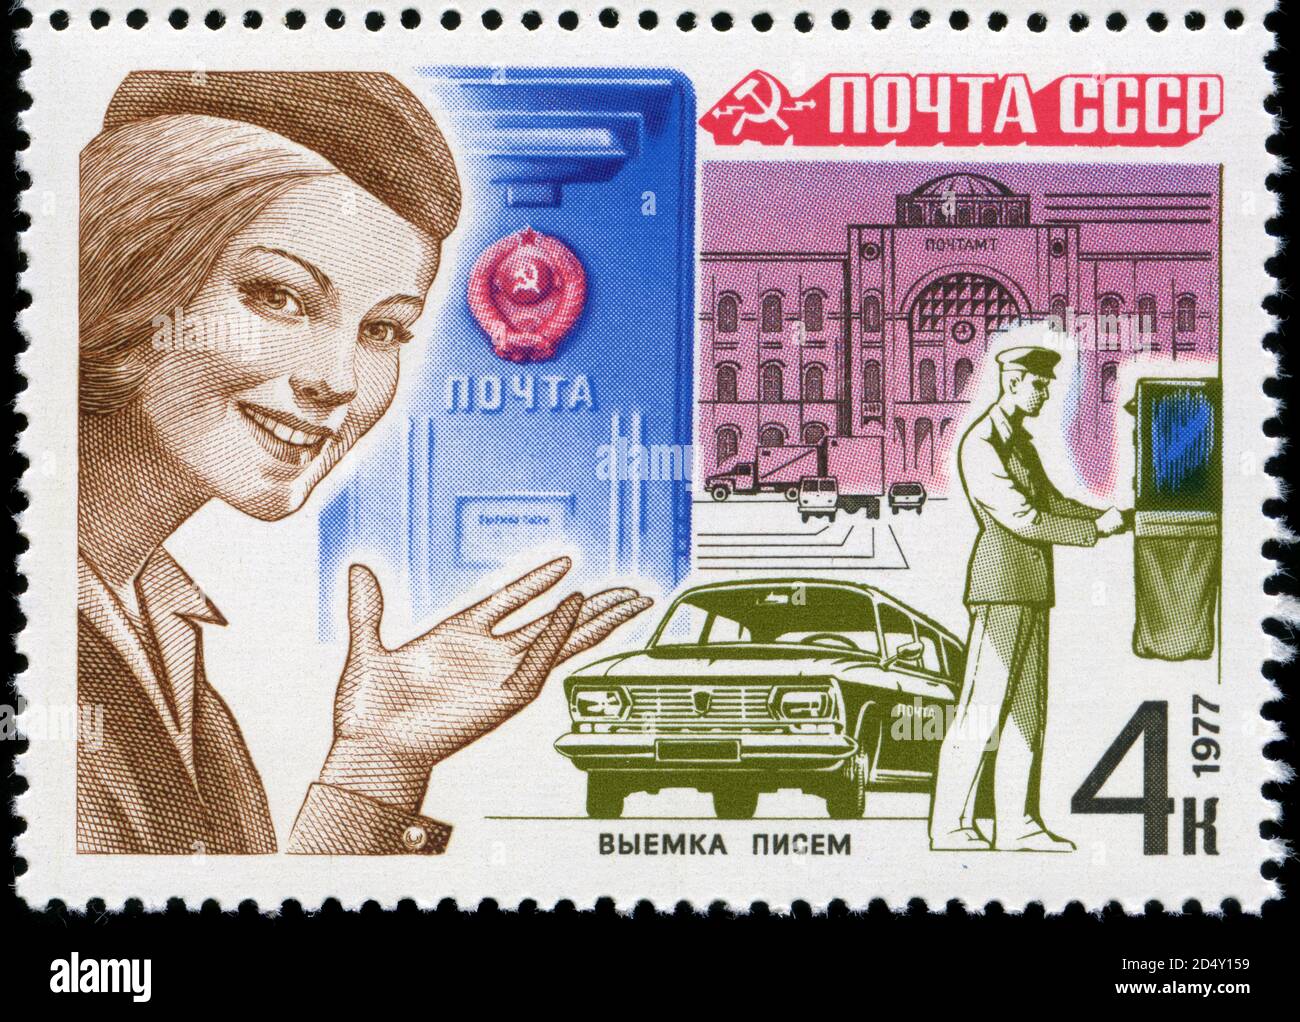 Timbre-poste de l'Union soviétique dans le service postal série publiée en 1977 Banque D'Images